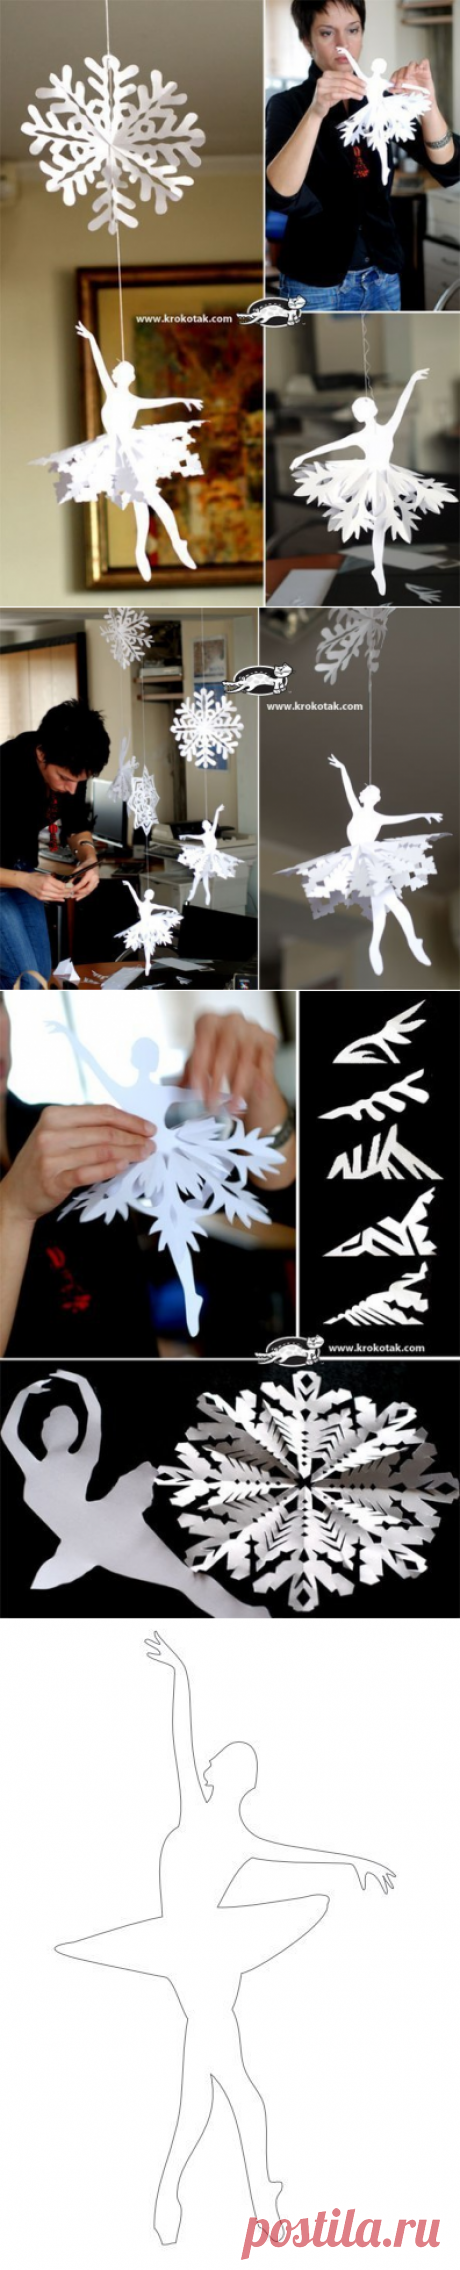 Делаем чудесную снежинку-балеринку — Сделай сам, идеи для творчества - DIY Ideas